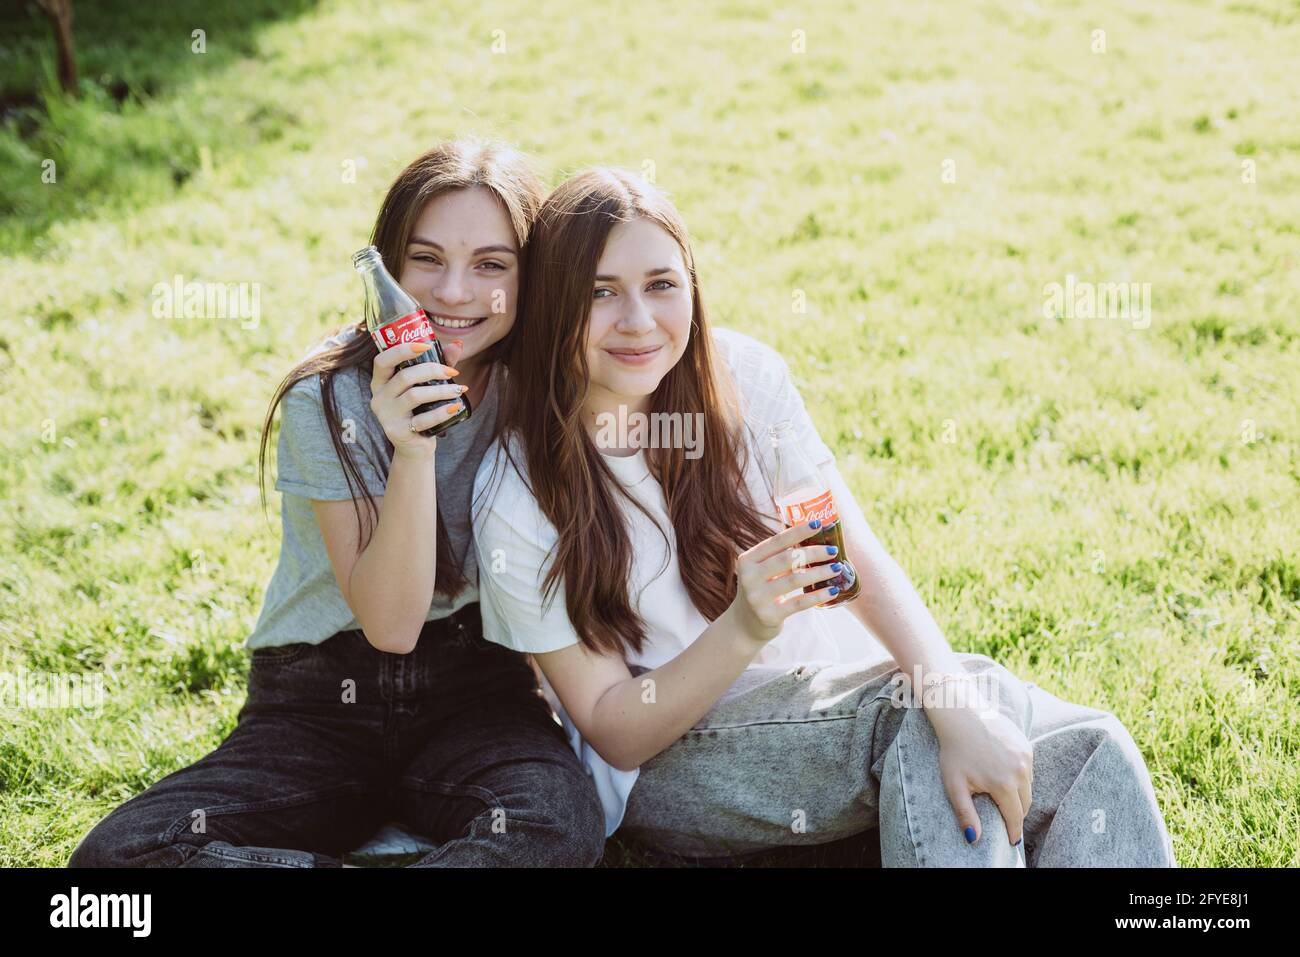 Buche, Ucraina, 26 maggio 2021. Belle giovani donne adolescenti in una calda giornata estiva con bottiglie di vetro di Coca-Cola nelle loro mani, sorridendo felice. Morbido Foto Stock